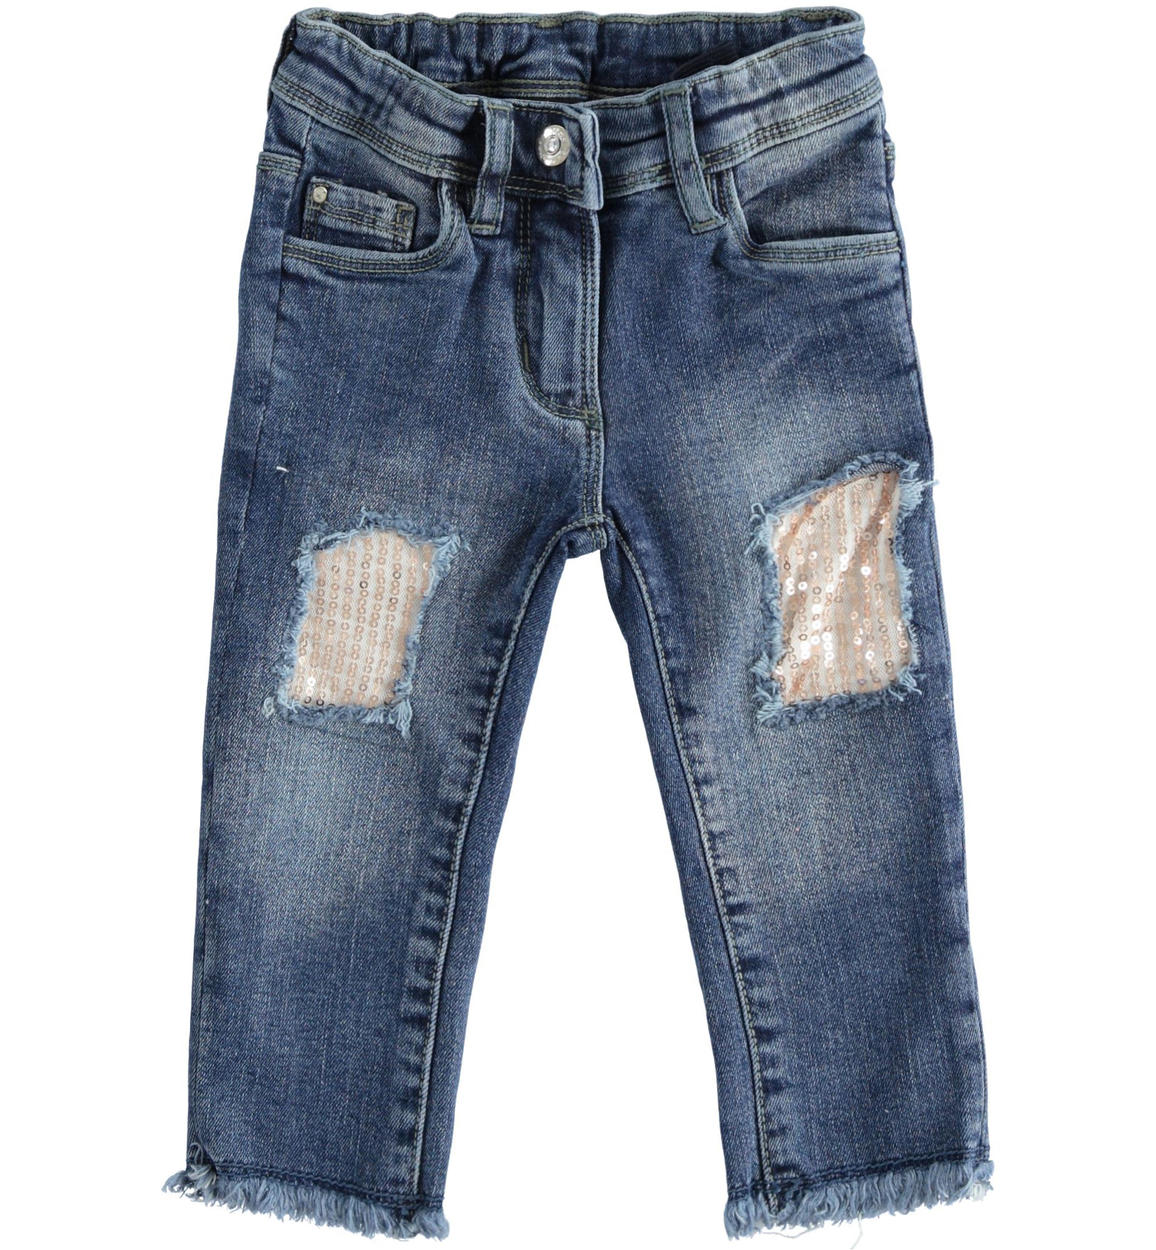 Pantalone in denim con toppe di paillettes per bambina da 6 mesi a 7 anni  Sarabanda - PANTALONI - Bambina - Sarabanda